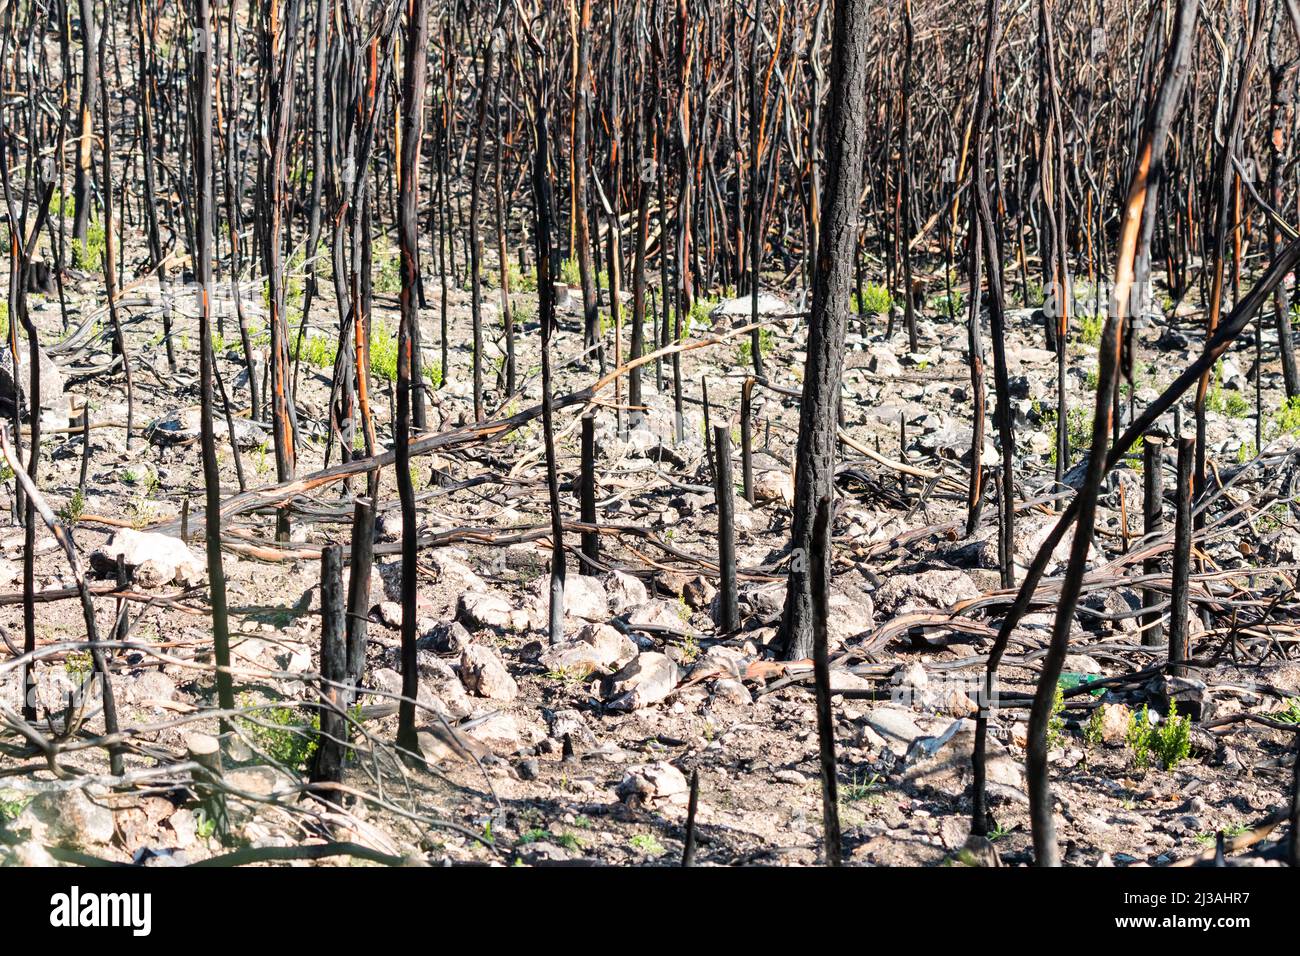 troncos de árboles quemados ennegrecidos o carbonizados después de un fuego salvaje en la naturaleza concepto naturaleza abstracta y daño o destrucción del fuego Foto de stock